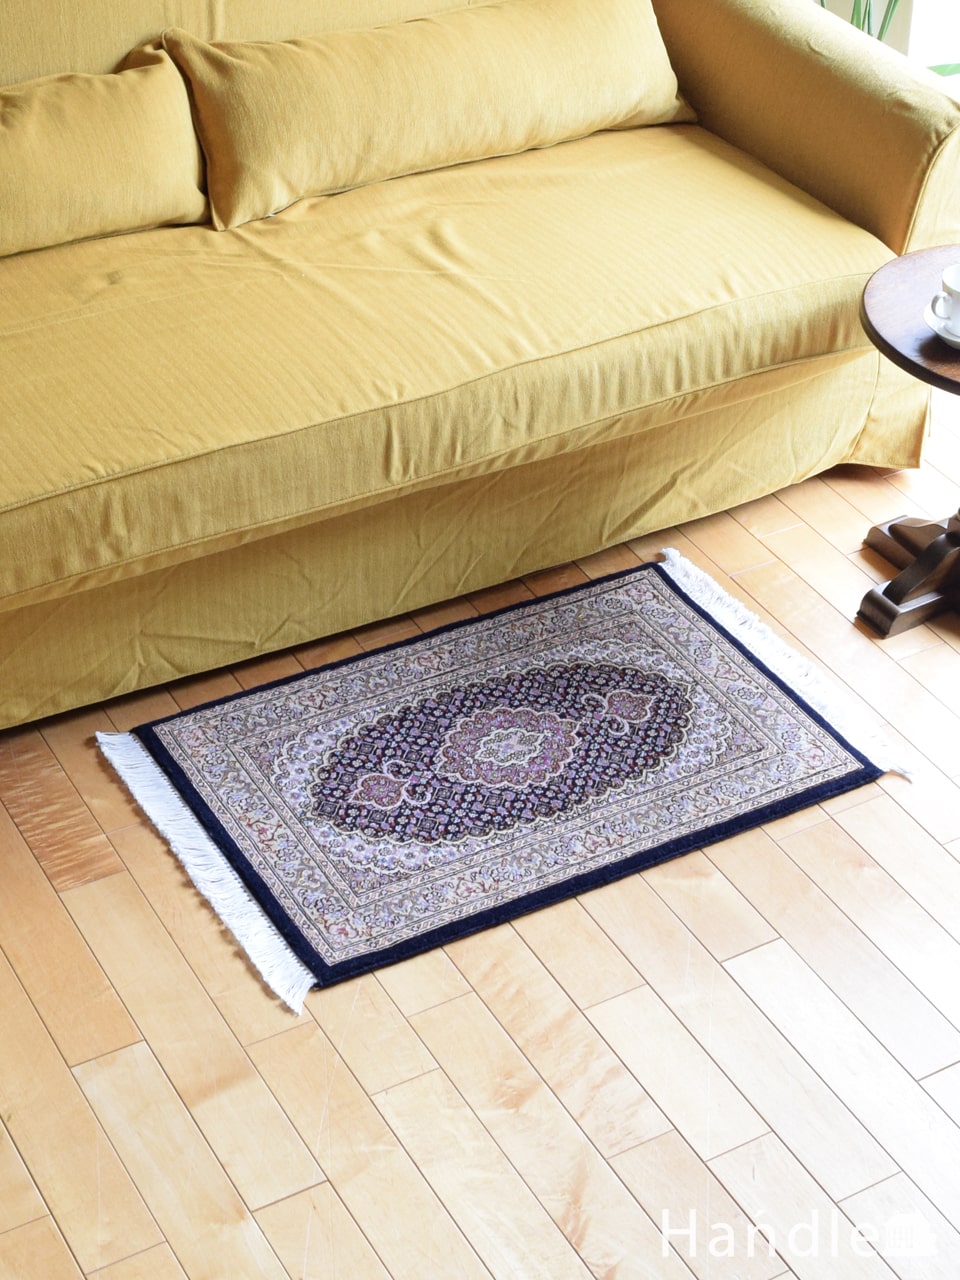 タブリーズ（Tabriz）の50Raj絨毯、おしゃれなマヒ柄のペルシャ絨毯 (m-8043-z)